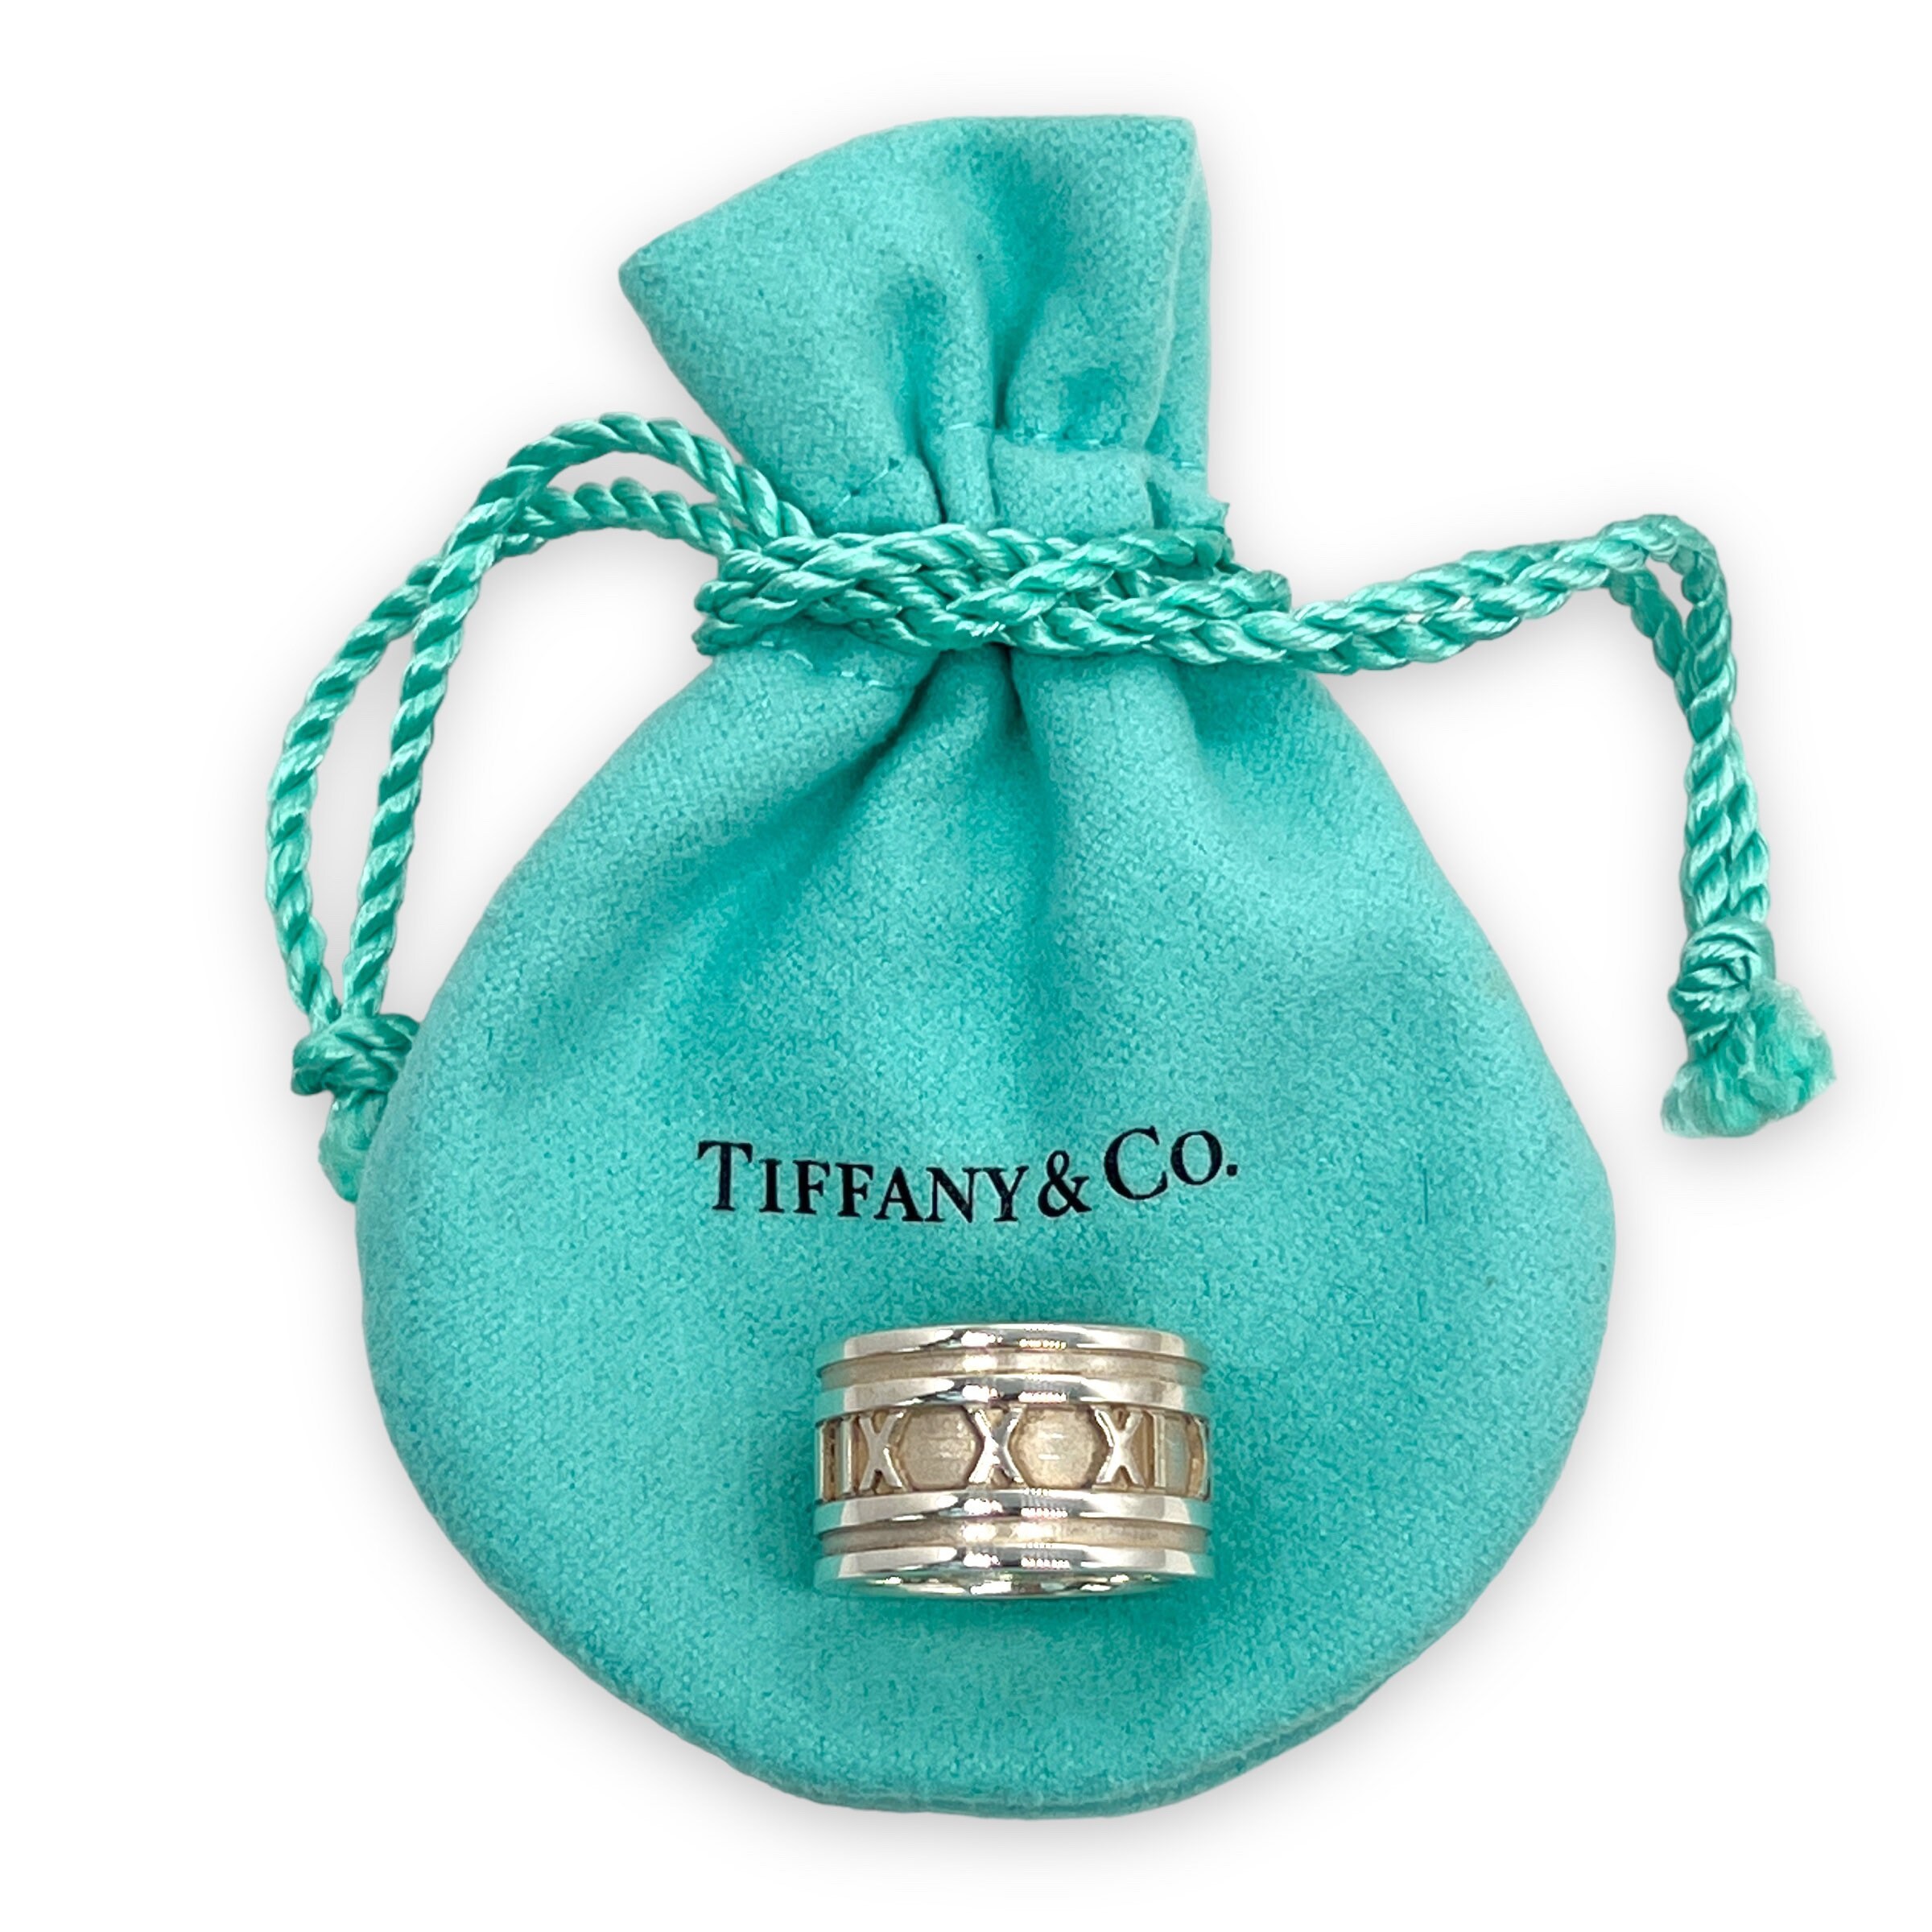 Tiffany & Co., Jewelry, Tiffany Co Vintage Atlas Roman Numeral  Ringauthentic